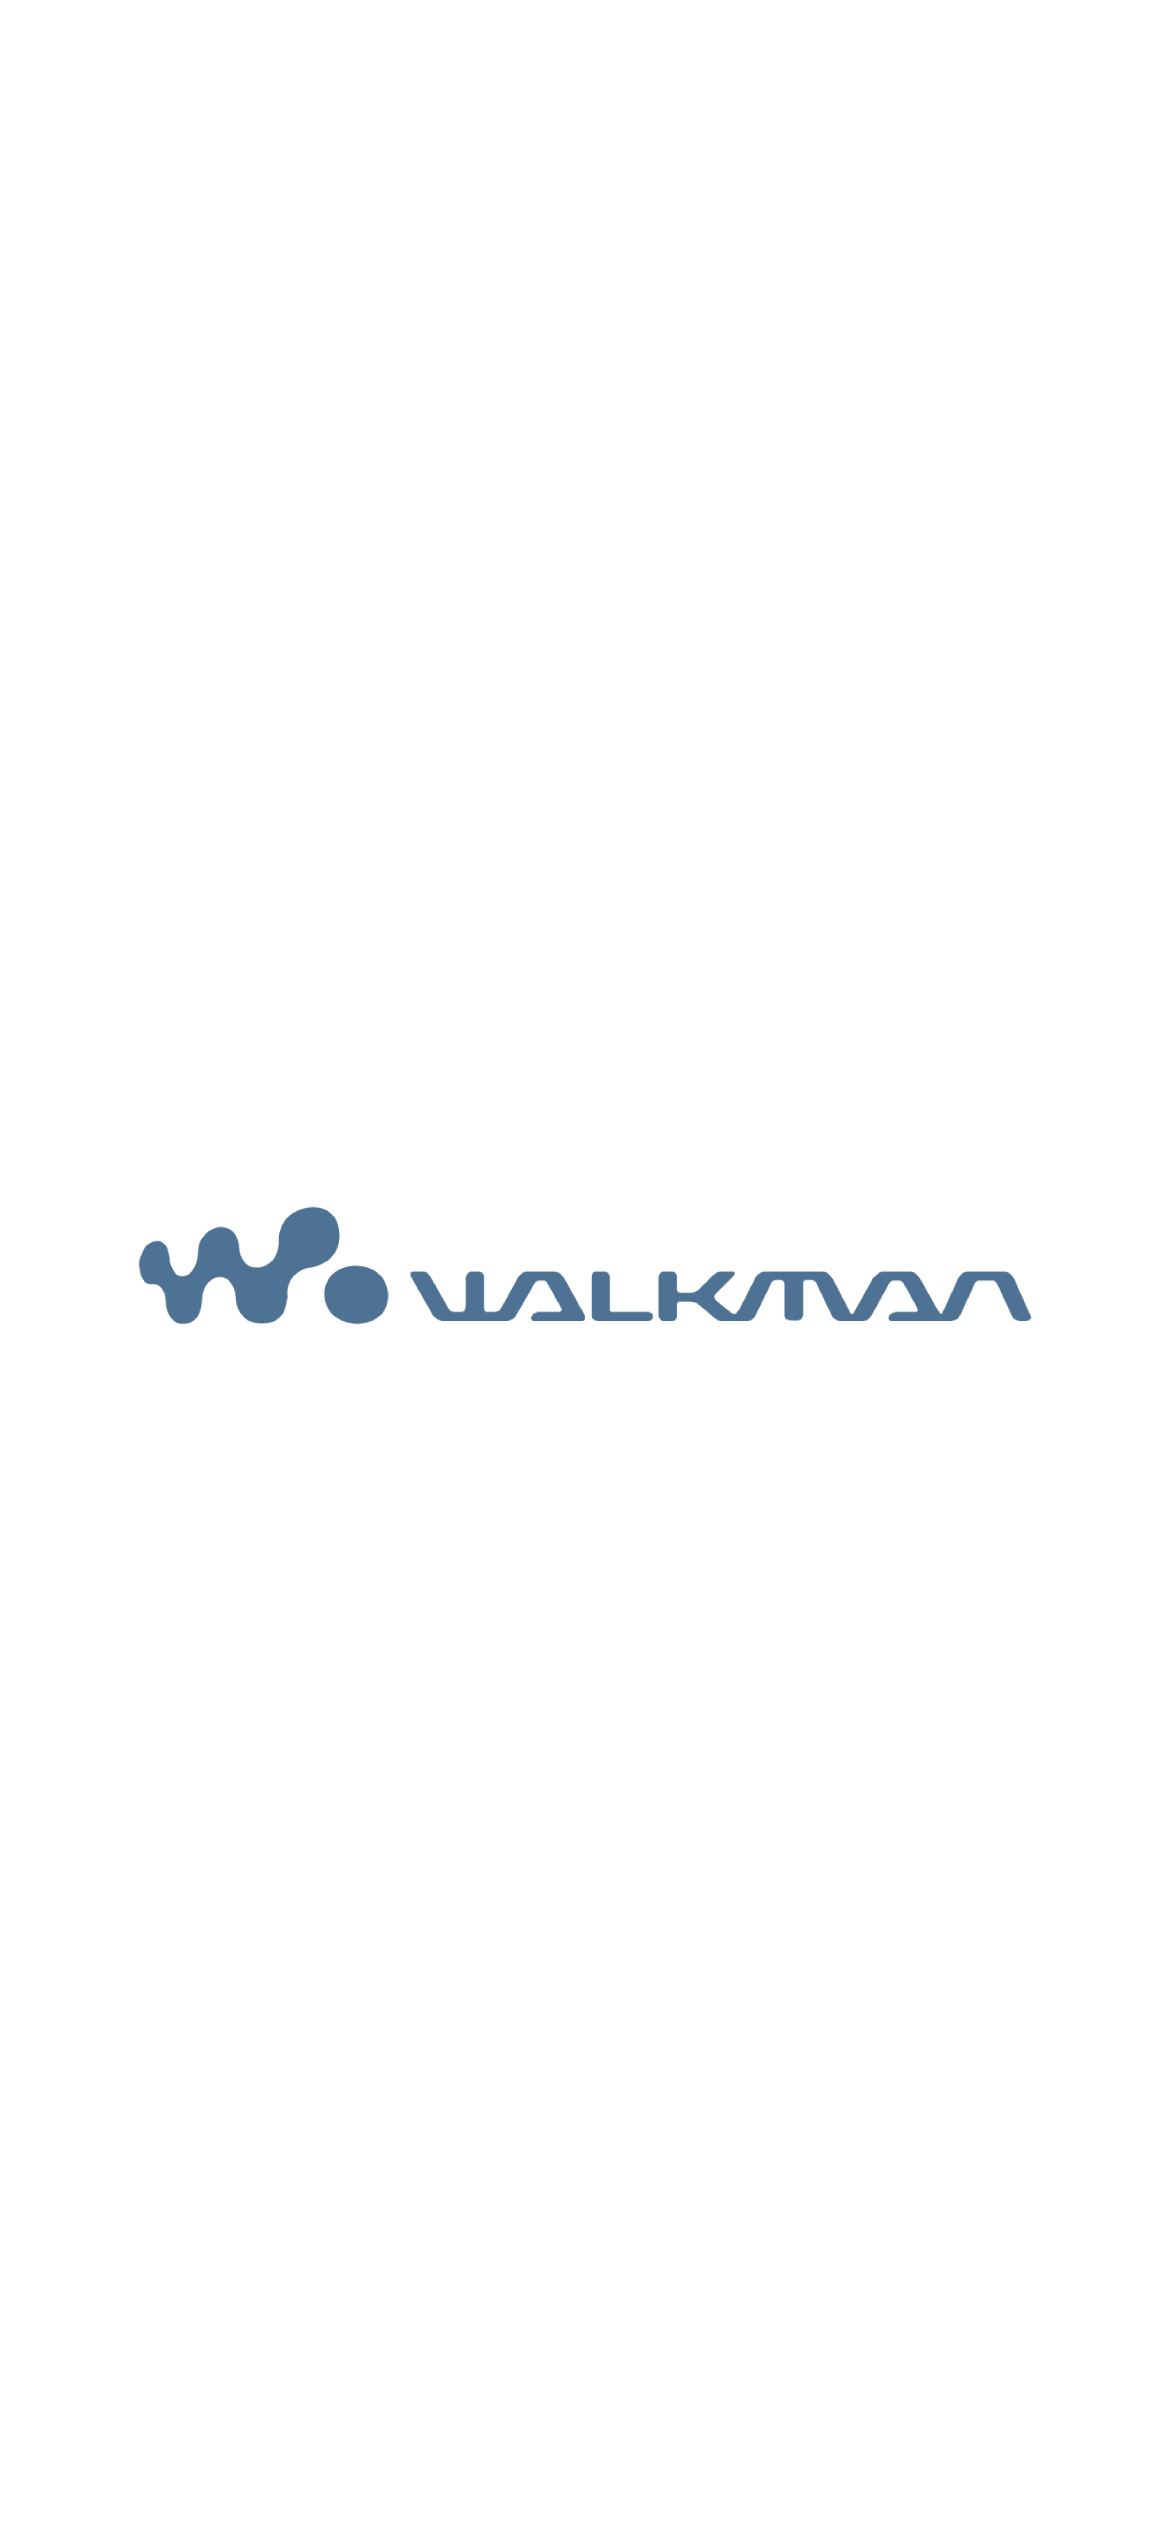 Walkman ウォークマン Iphone 12 Pro 壁紙 待ち受け スマラン